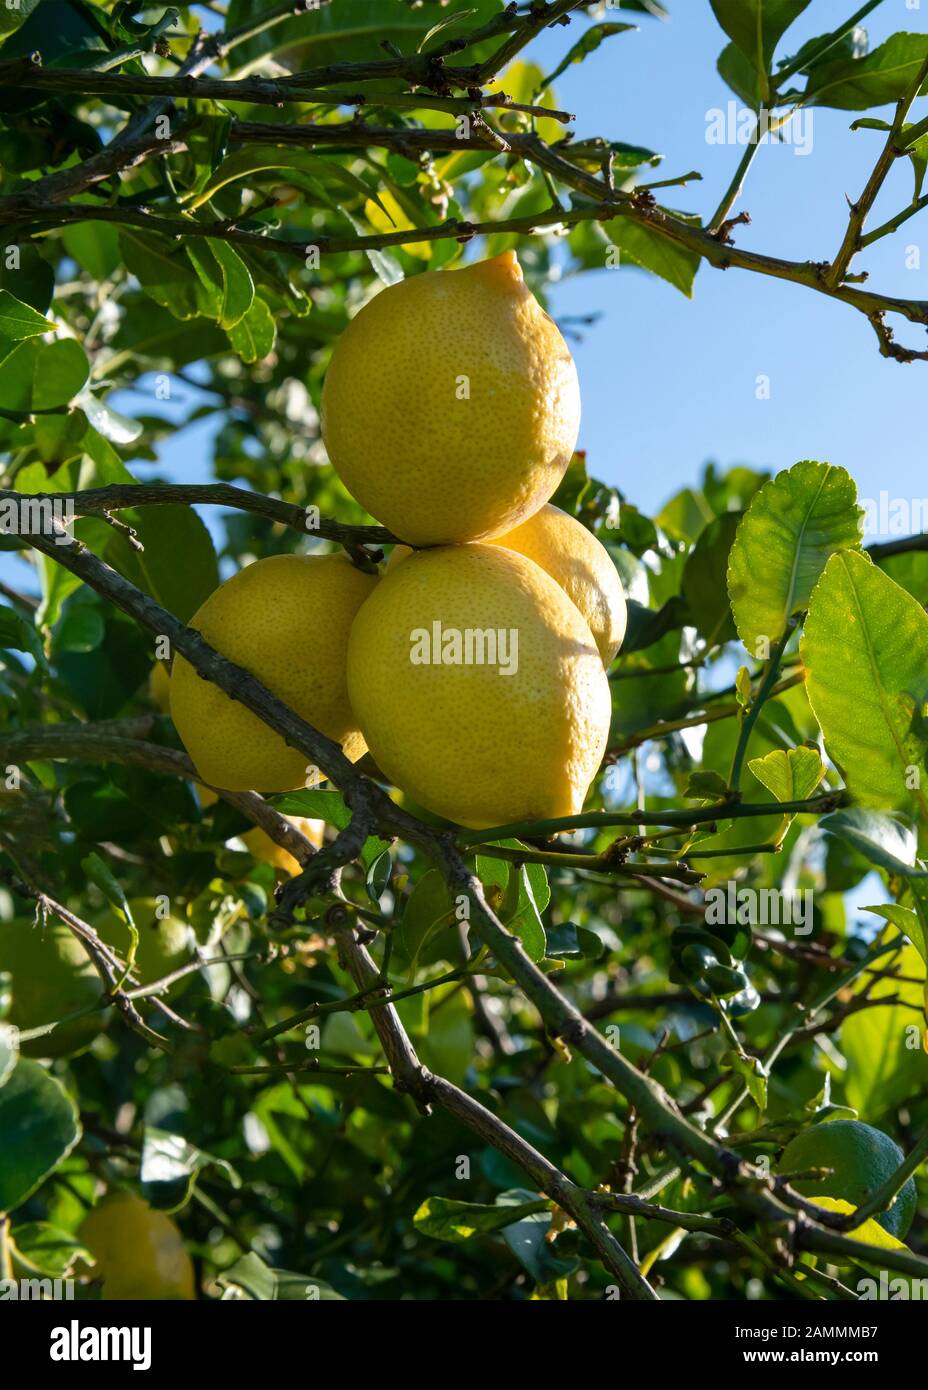 Gruppe spanischer Zitronen, die an einem senkrechten Baum hängen. Für den Kopierraum, der die Abendsonne, Grün im Hintergrund, eintüncht Stockfoto